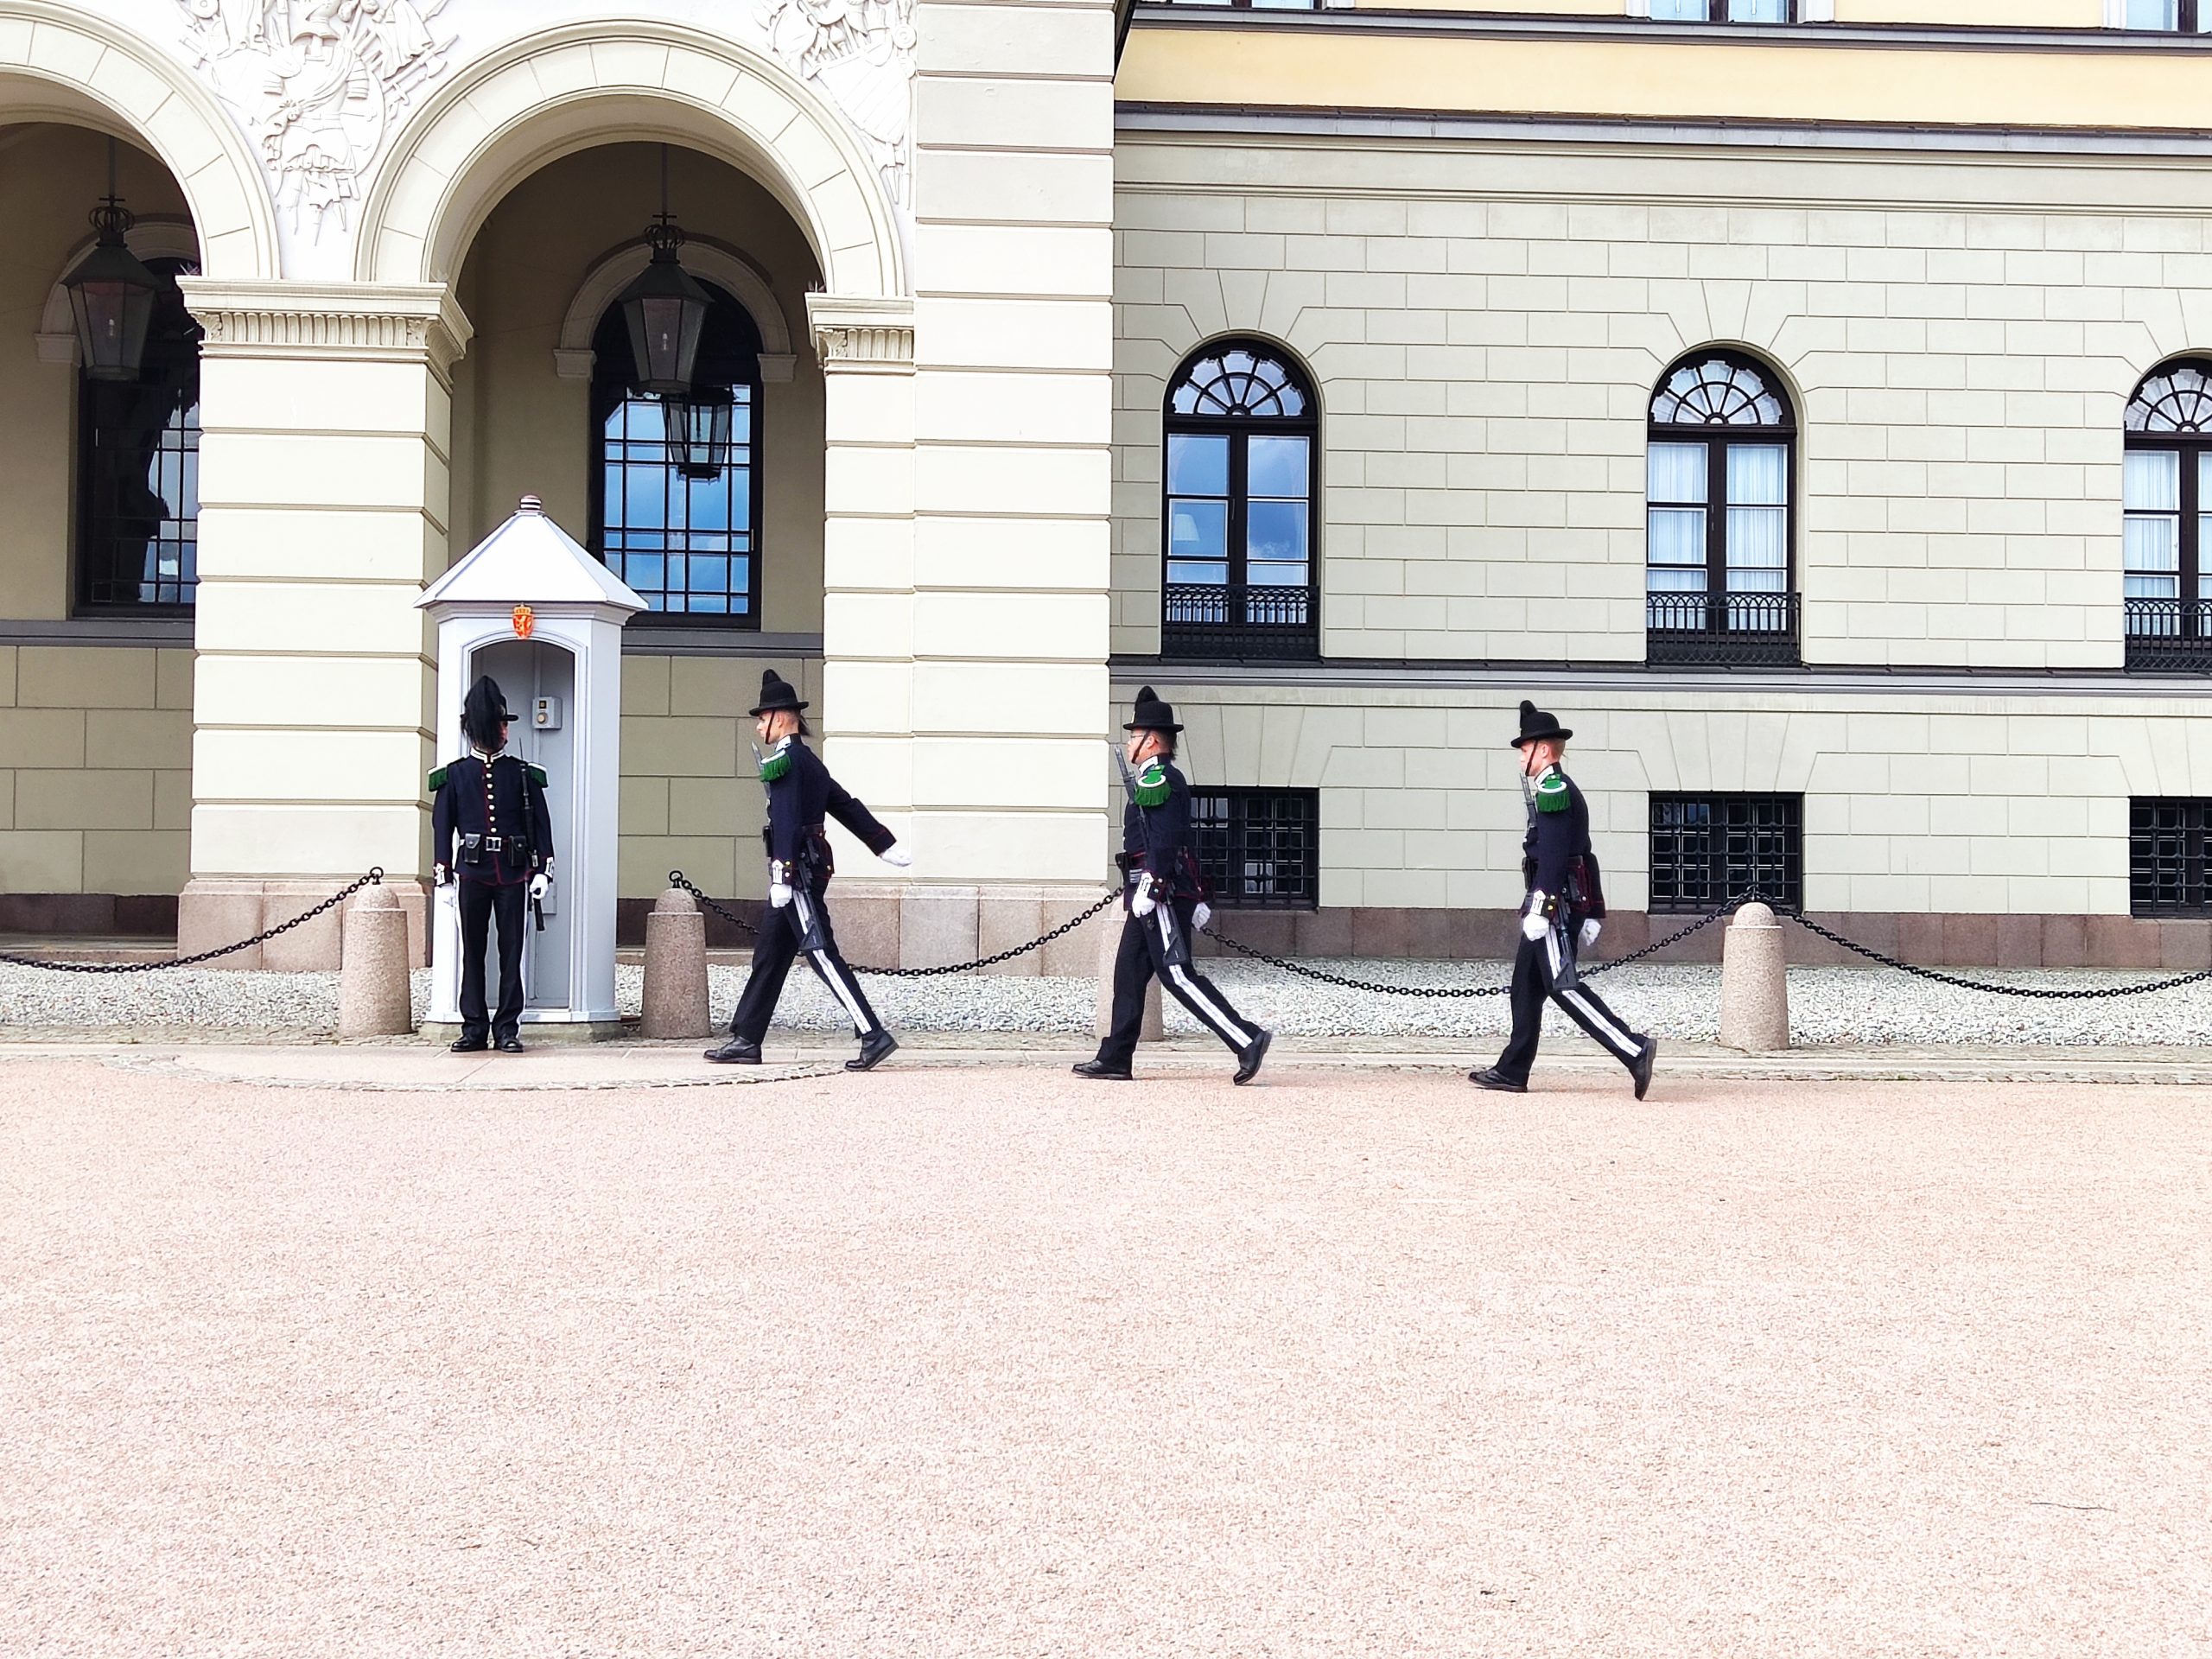 Palacio real de Oslo (cambio de guardia) - Qué ver en Oslo